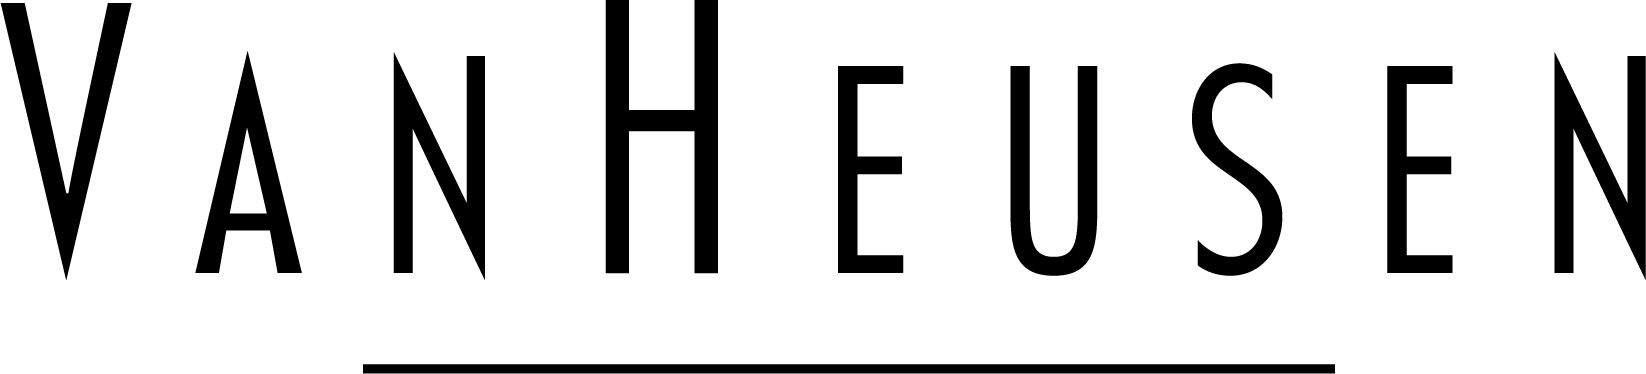 Van Heusen logo.